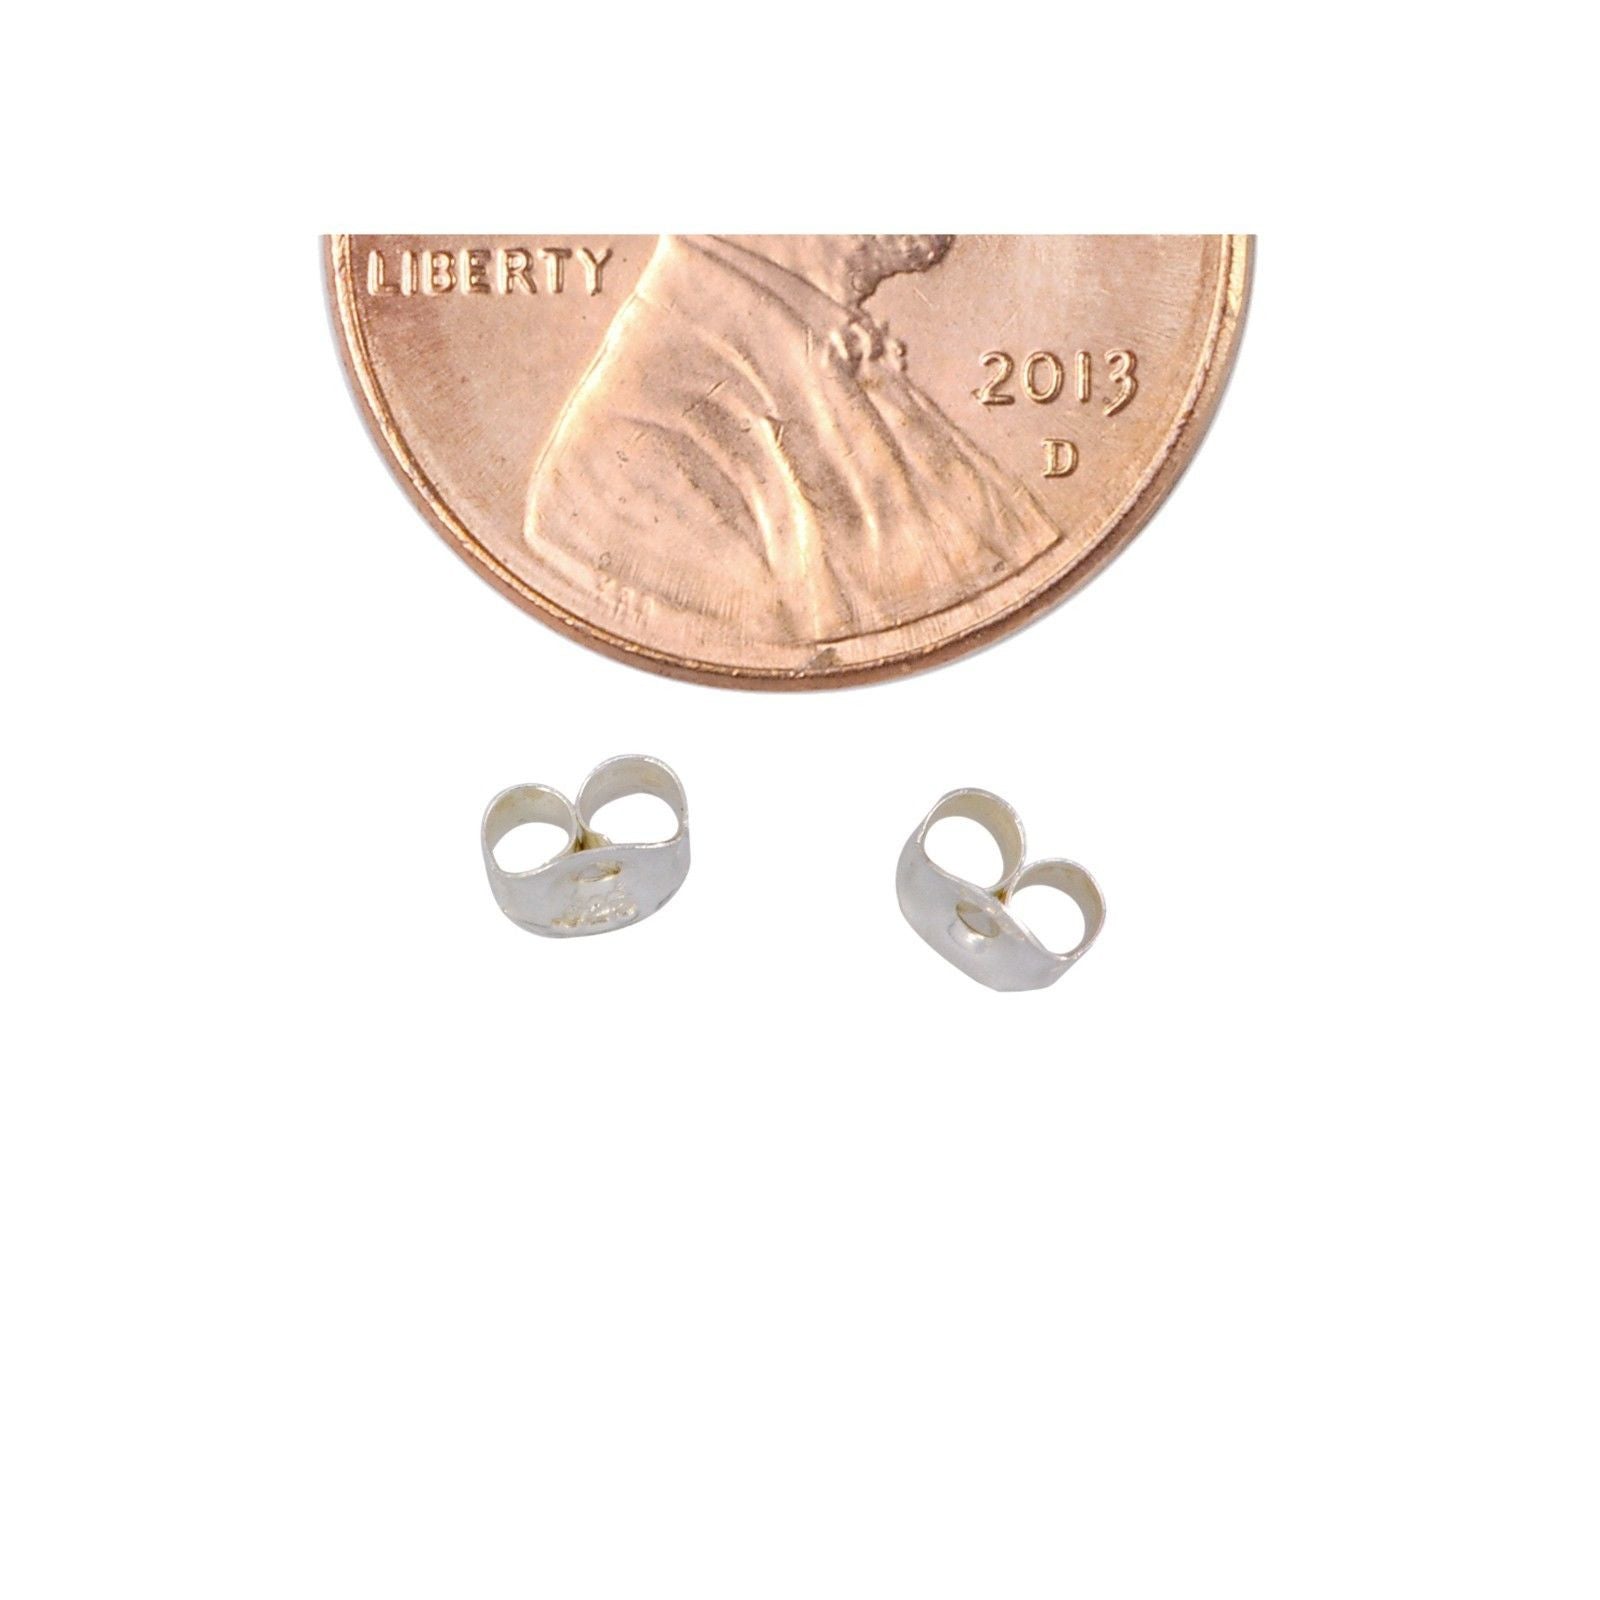 Beadsnice Earring Components Sterling Silver Comfort Clutch Earring Backs  Soft Wide Earnuts for Stud Earrings ID 34951